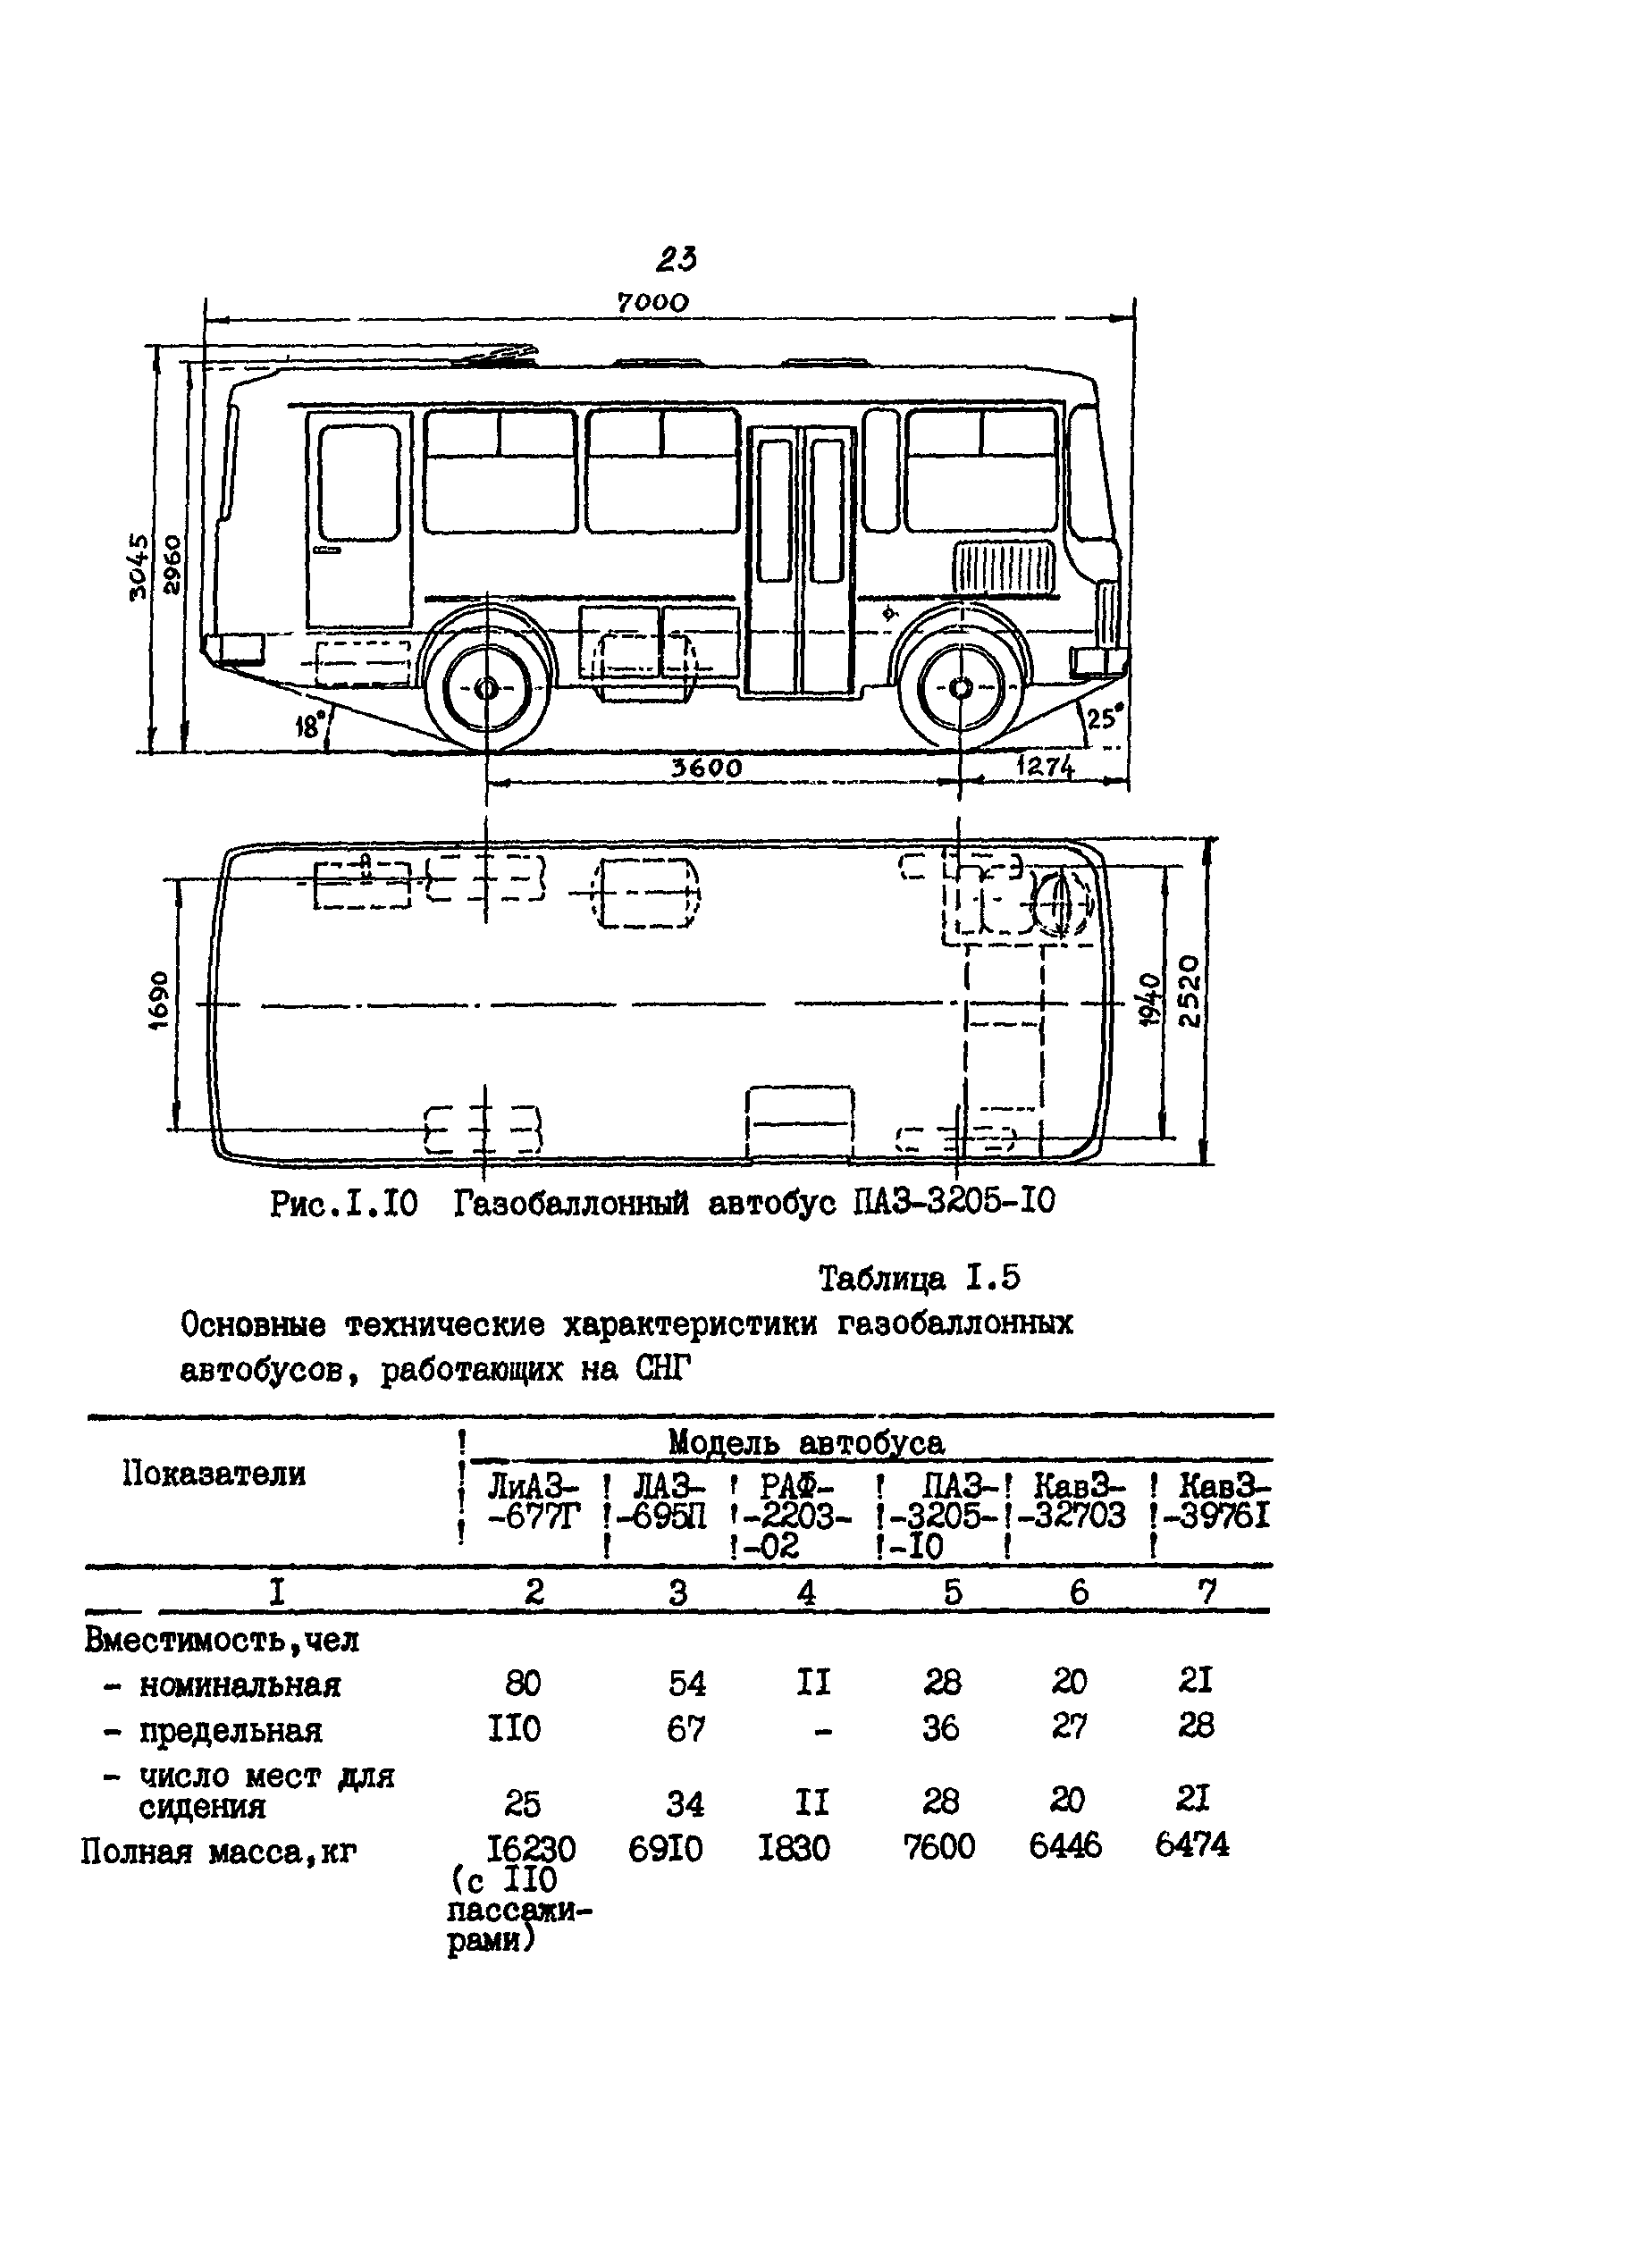 Паз-32053-70 технические характеристики и устройство